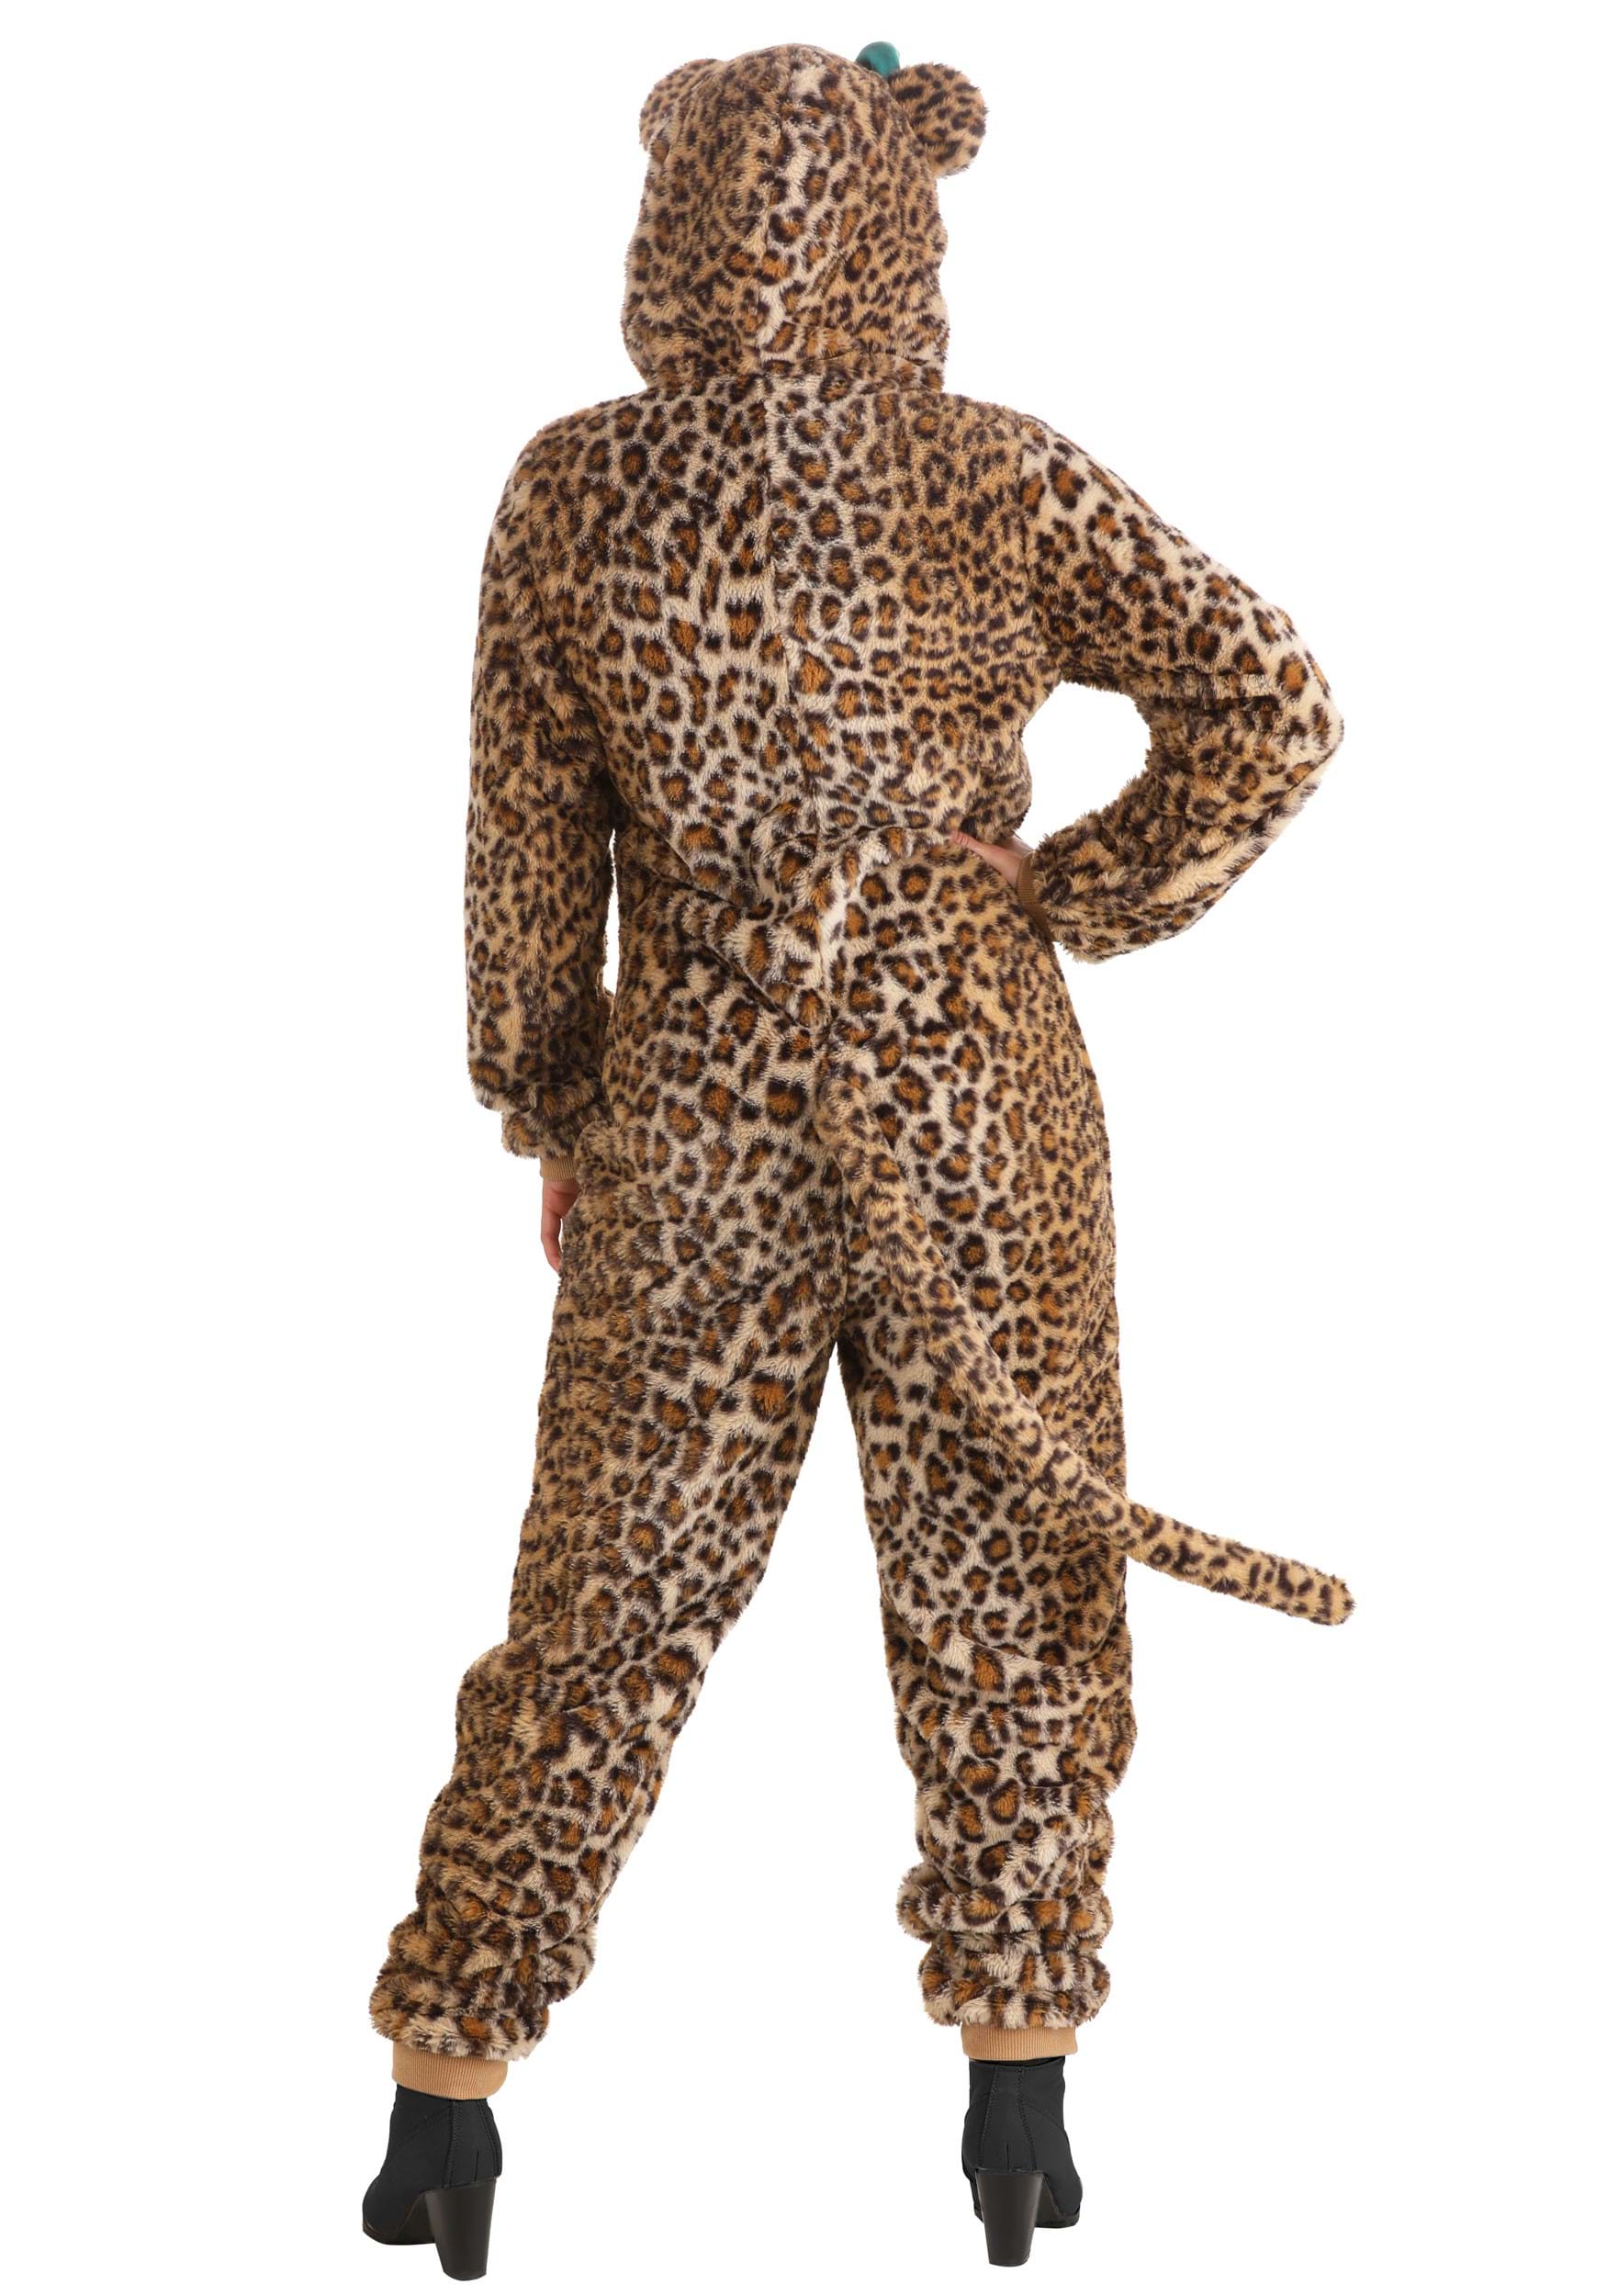 Posh Peanut Adult Lana Leopard Costume